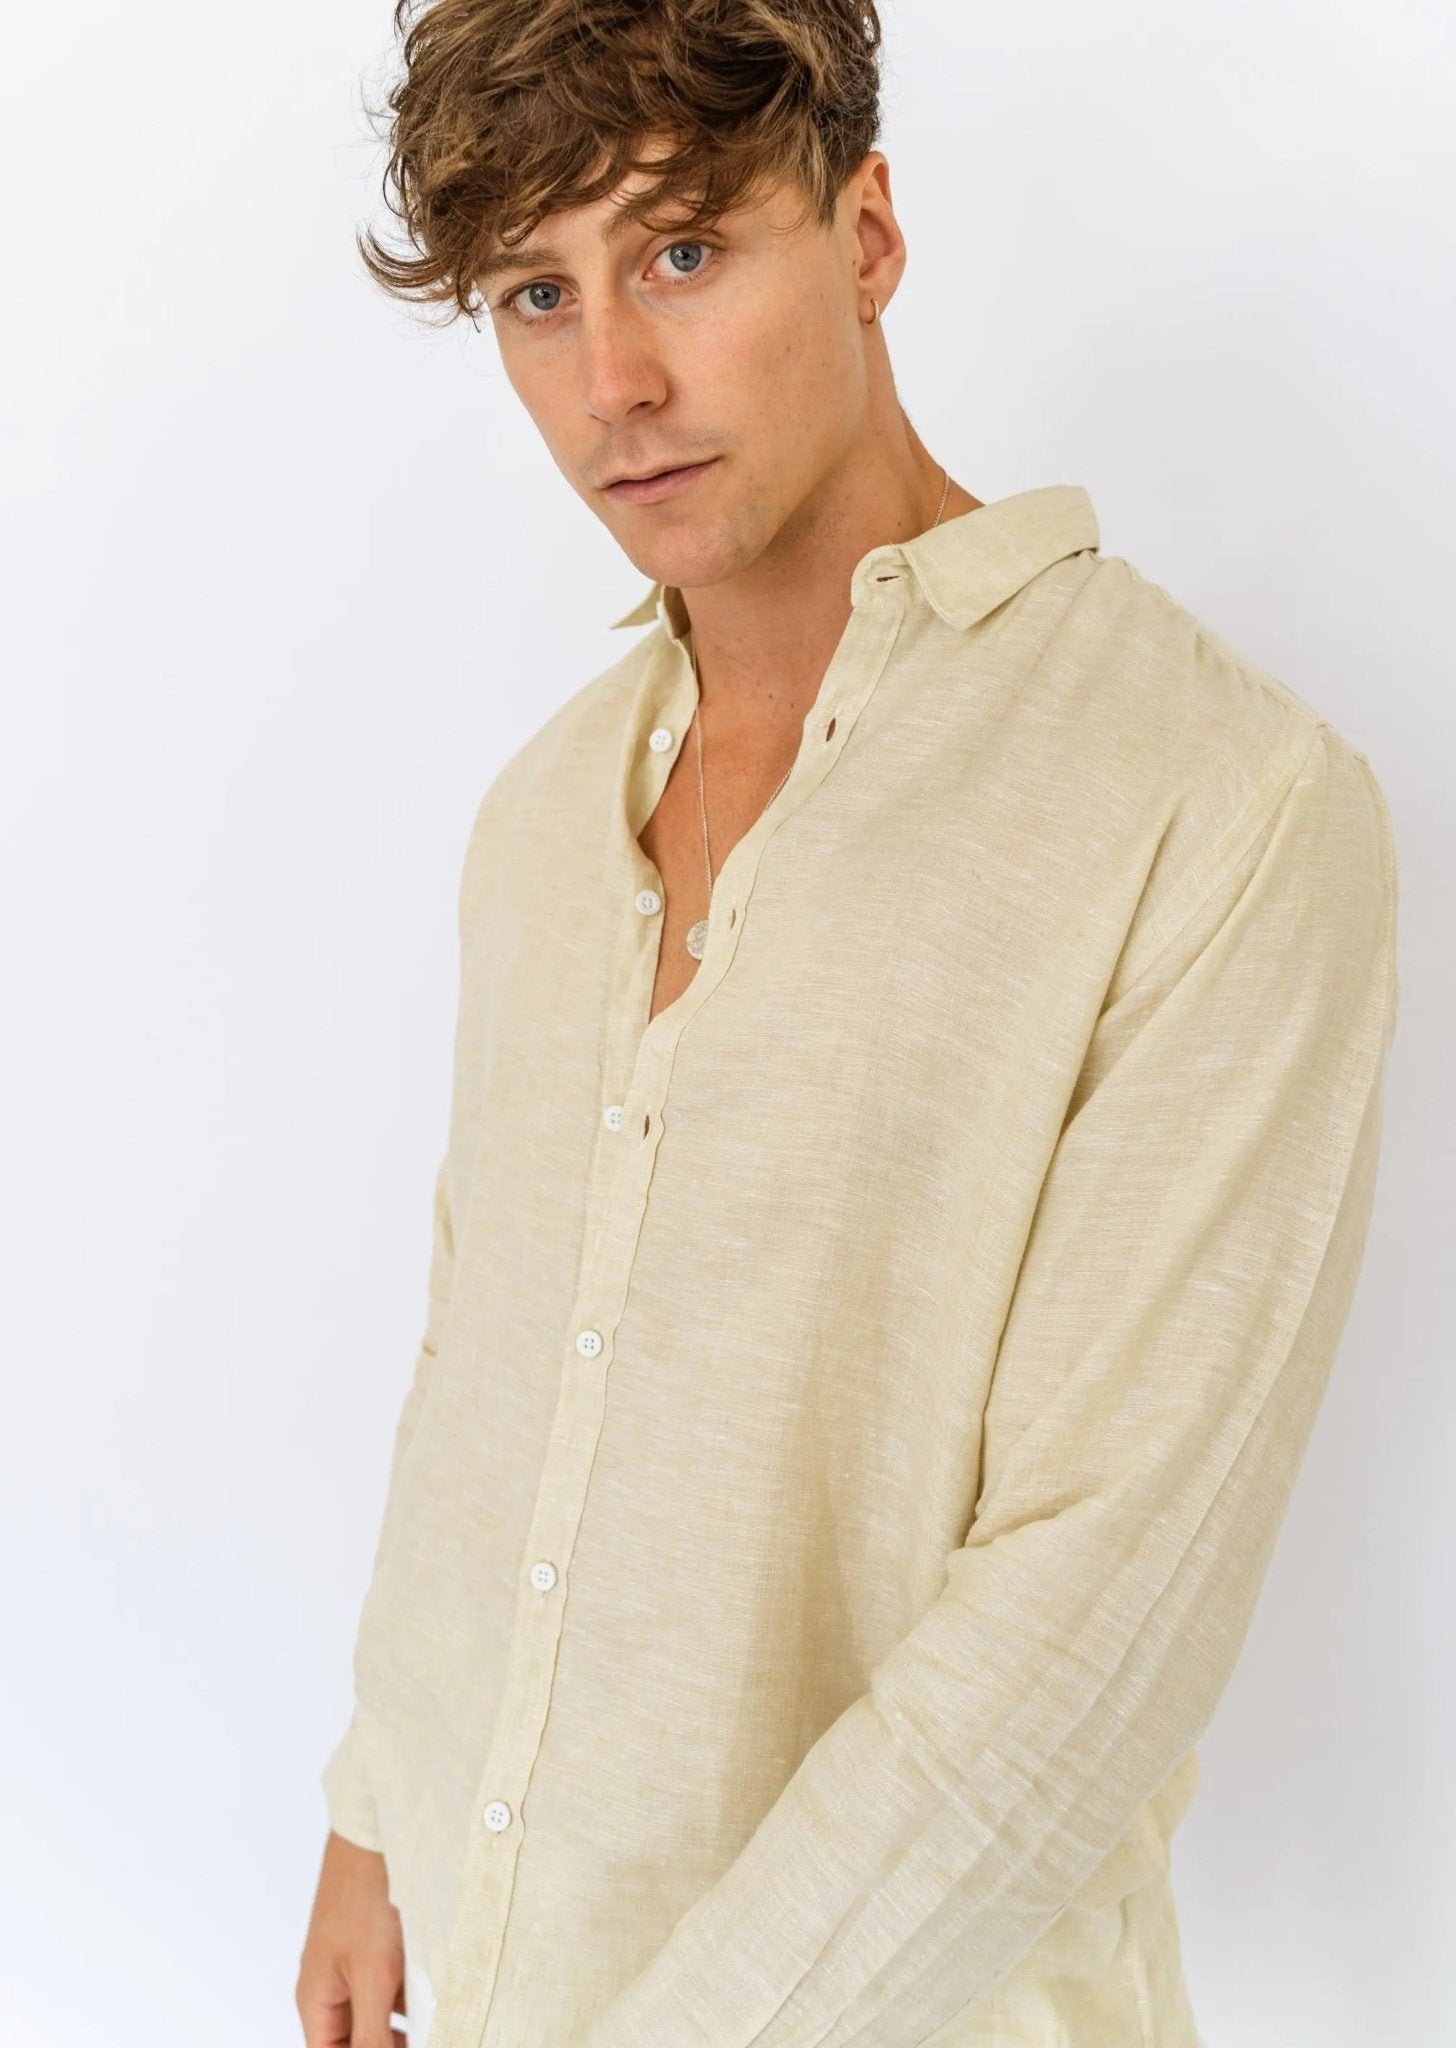 Aurum - Long Sleeve Italian Linen Shirt - Mr. Linen Co Mr. Linen CO